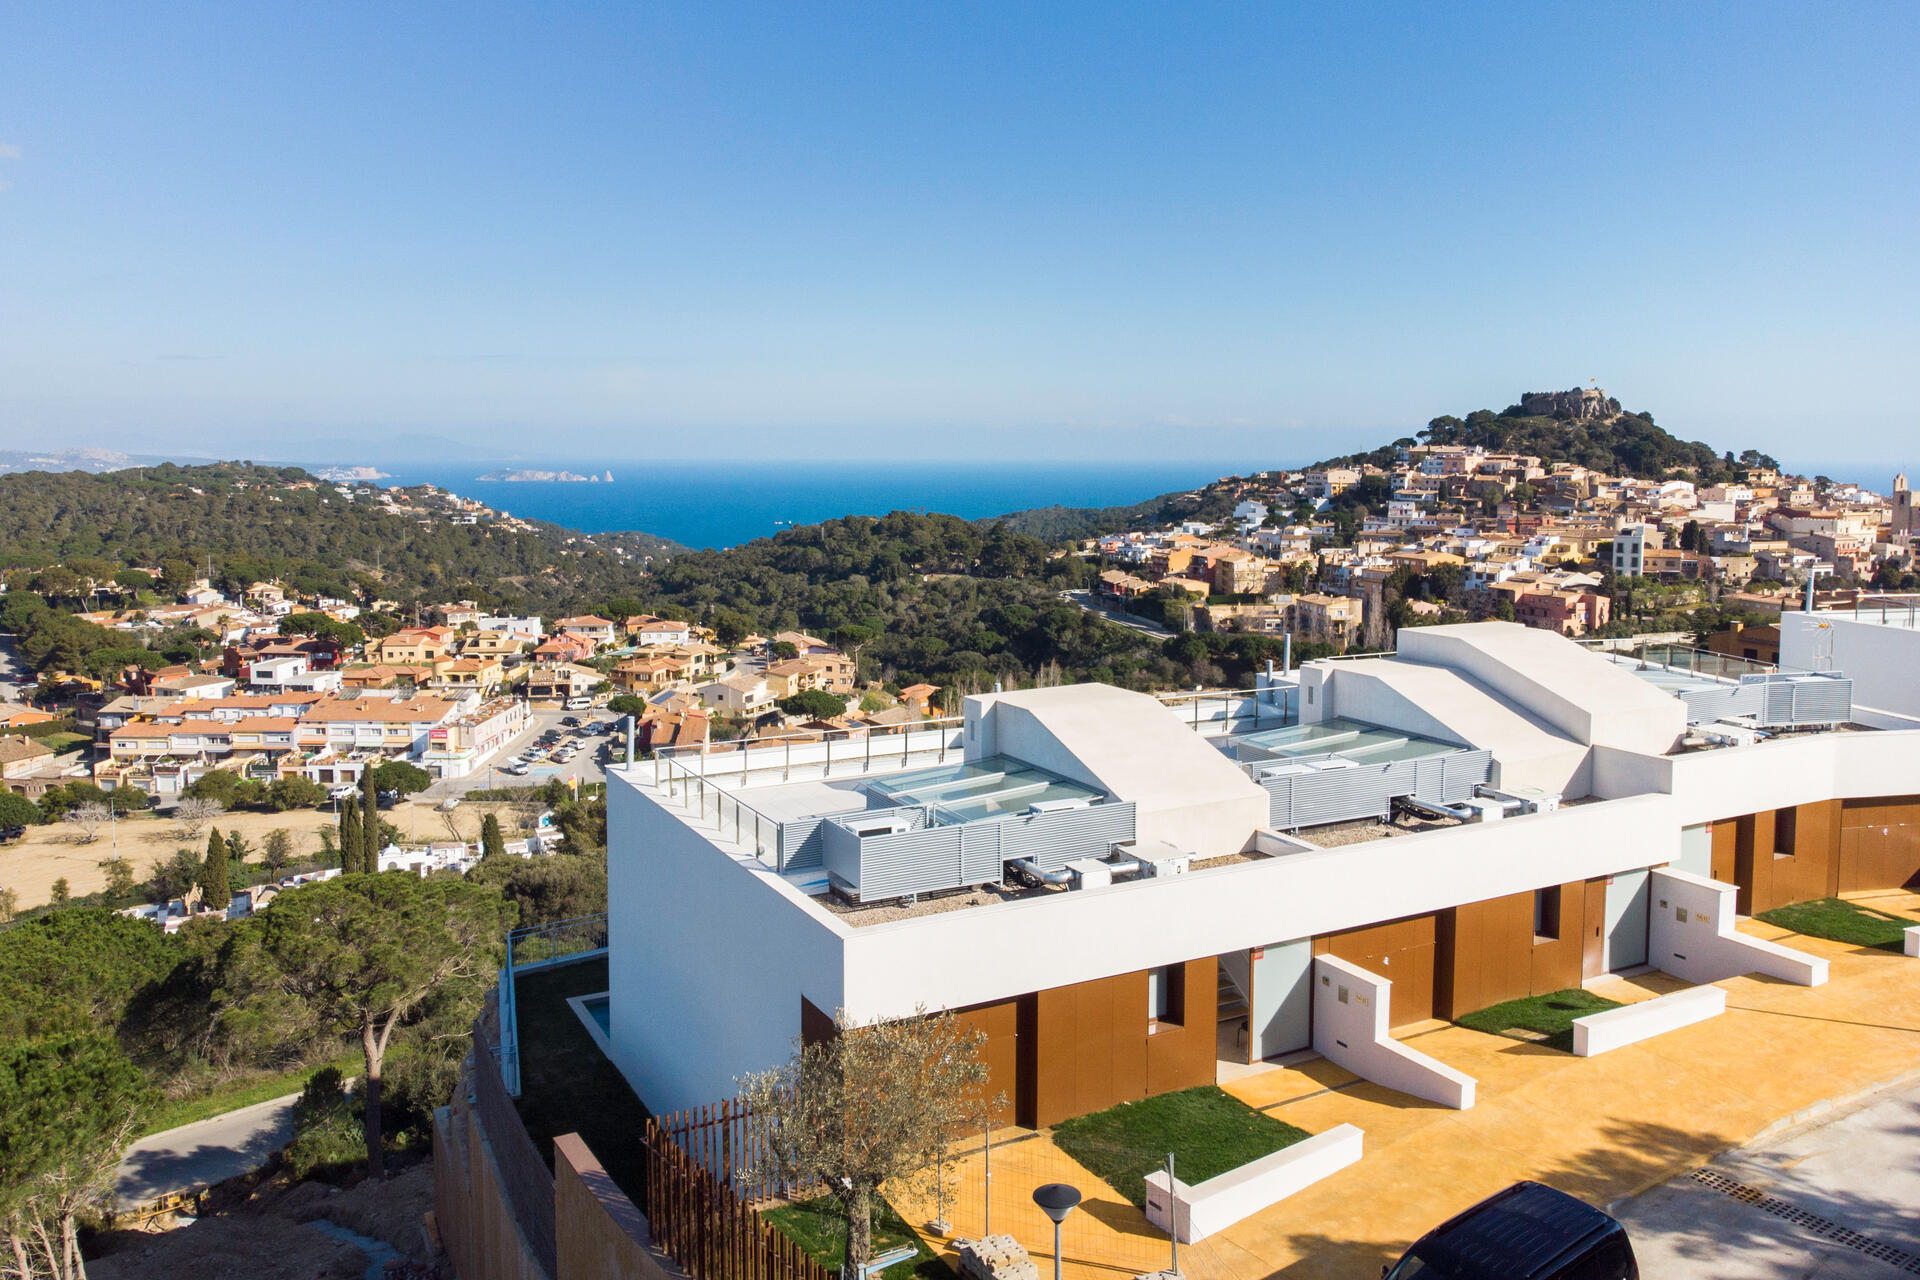 Villen / Wohnung mit Meerblick in Spanien an der Costa Brava